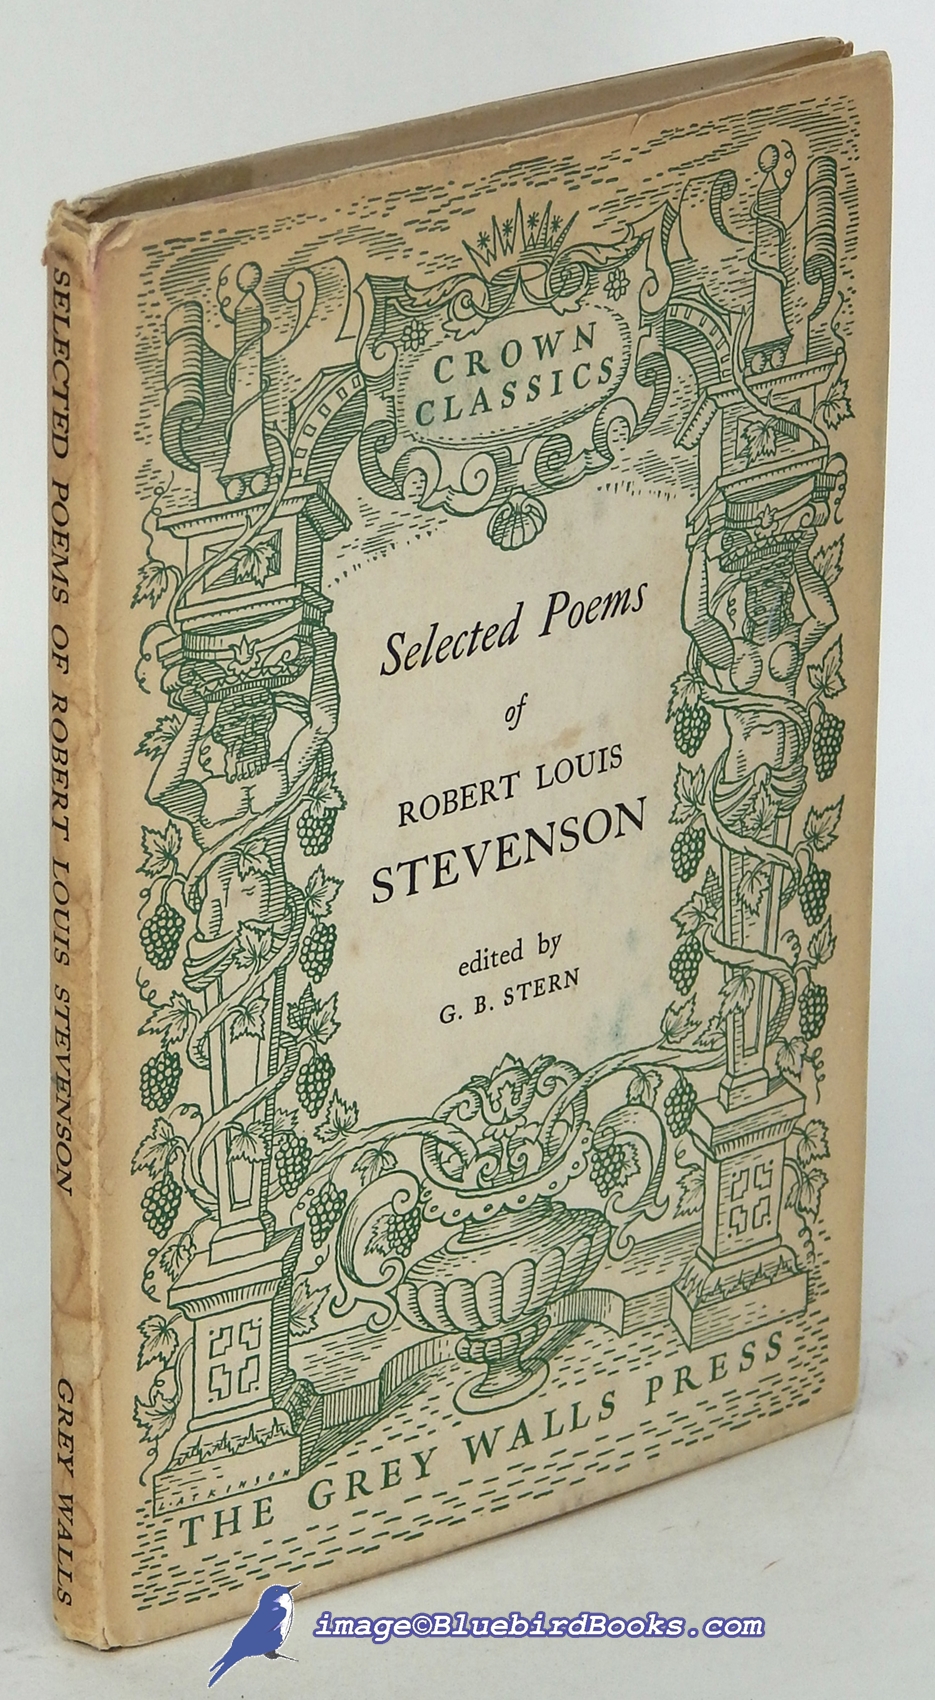 STEVENSON, ROBERT LOUIS - Selected Poems of Robert Louis Stevenson